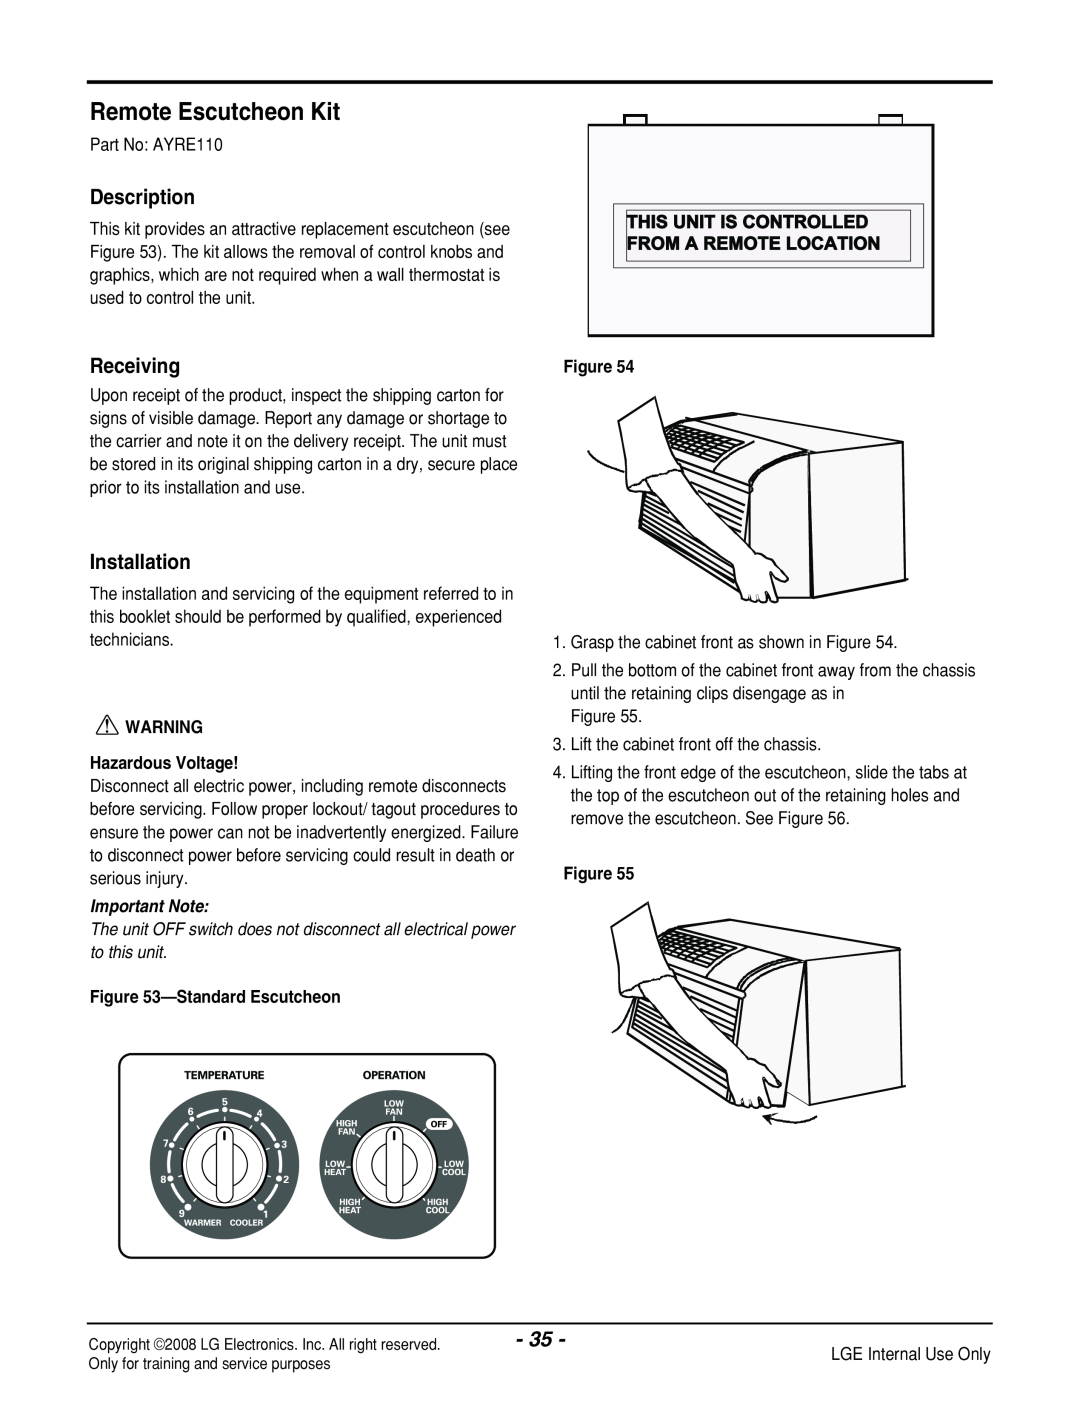 LG Electronics LP121CEM-Y8 Remote Escutcheon Kit, Description, Receiving, Installation, Hazardous Voltage, Important Note 